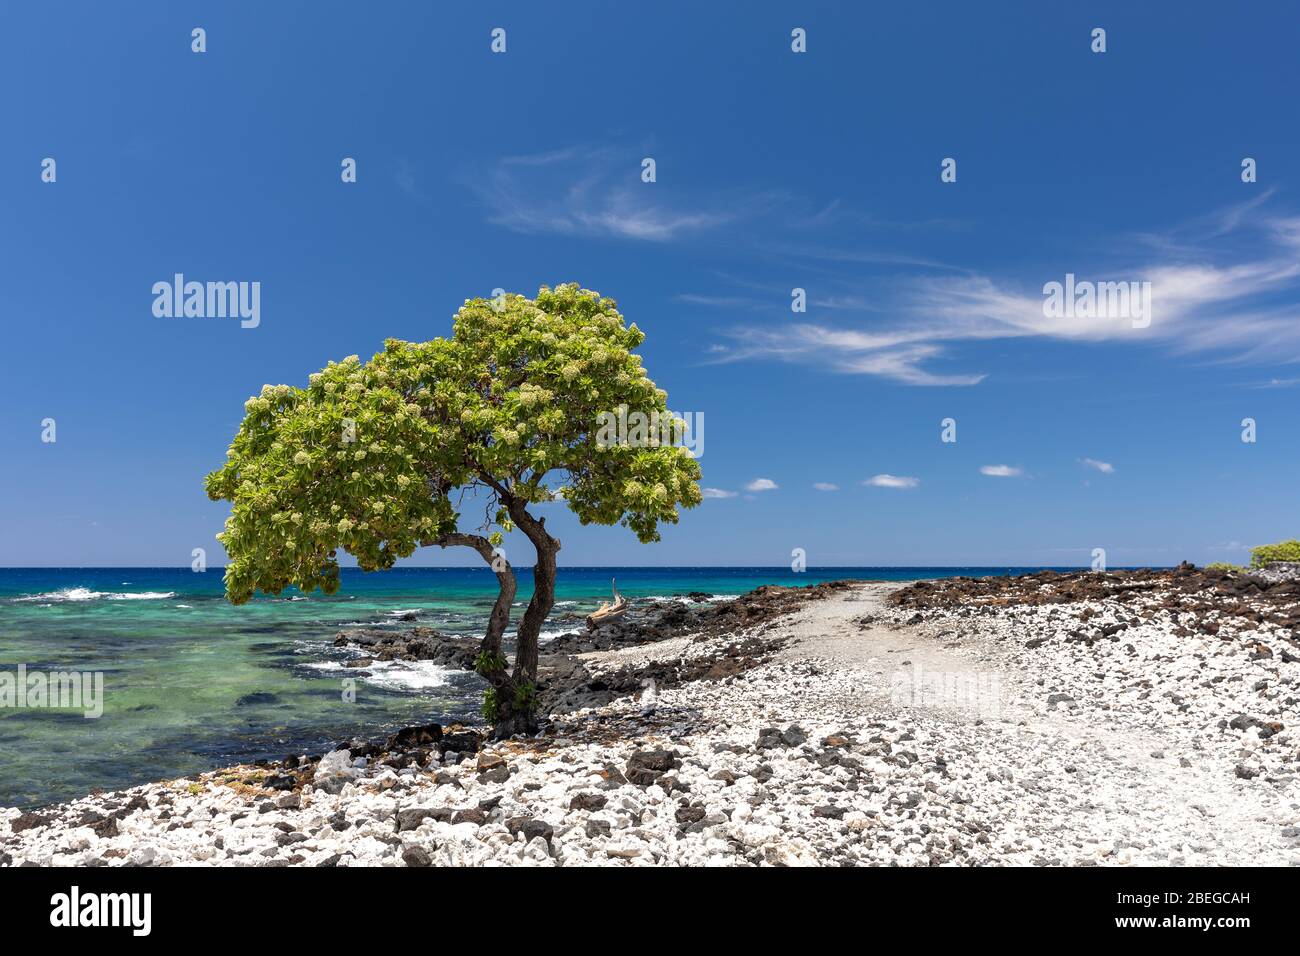 A lone tree on the stony shore of the Big Island, Hawaii Stock Photo